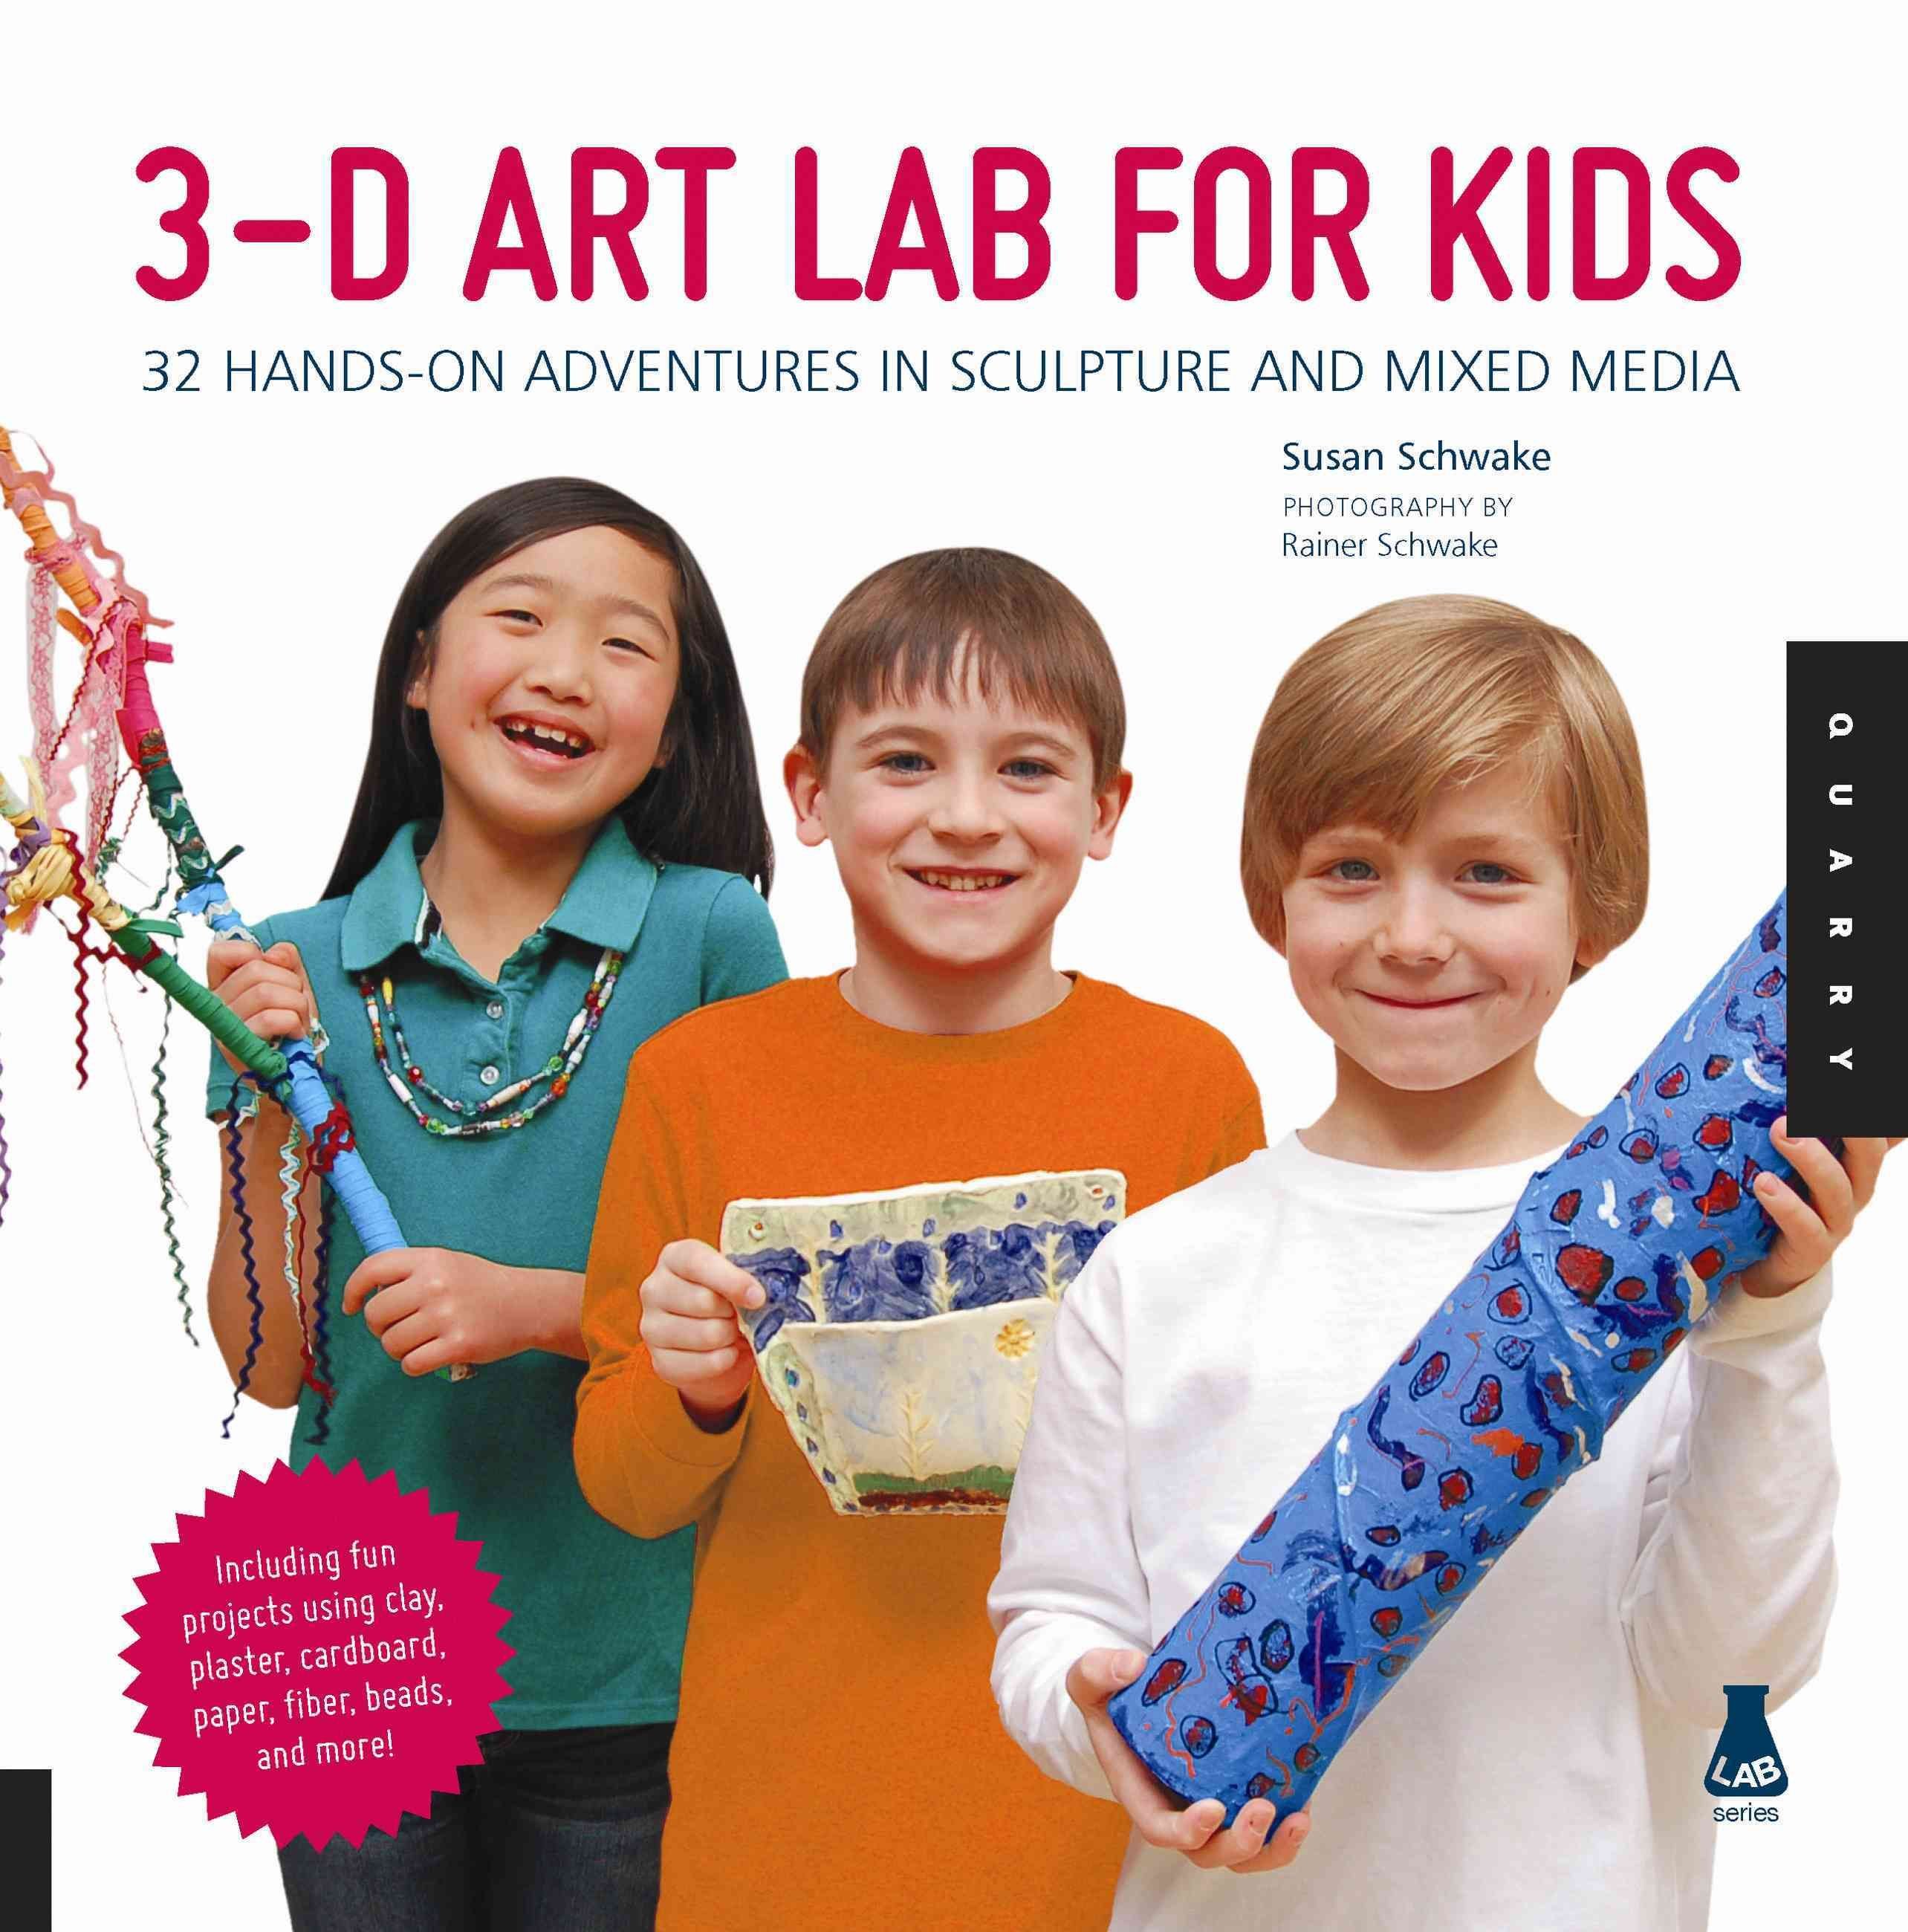 STEAM Lab for Kids: 52 Creative by Heinecke, Liz Lee